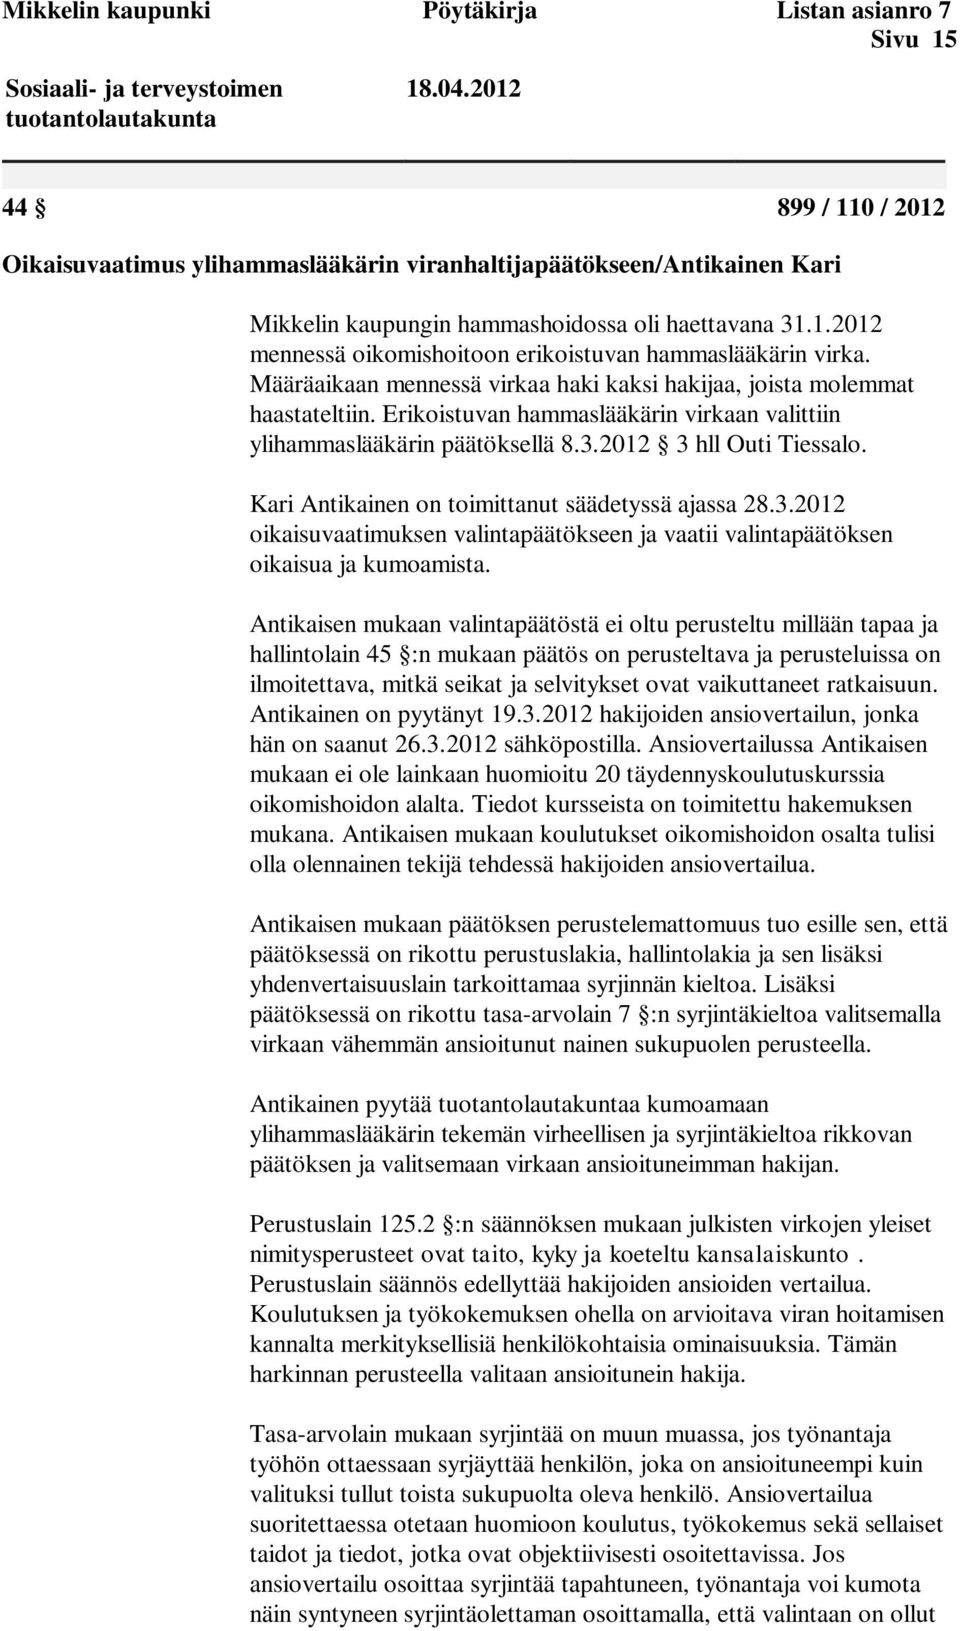 Määräaikaan mennessä virkaa haki kaksi hakijaa, joista molemmat haastateltiin. Erikoistuvan hammaslääkärin virkaan valittiin ylihammaslääkärin päätöksellä 8.3.2012 3 hll Outi Tiessalo.